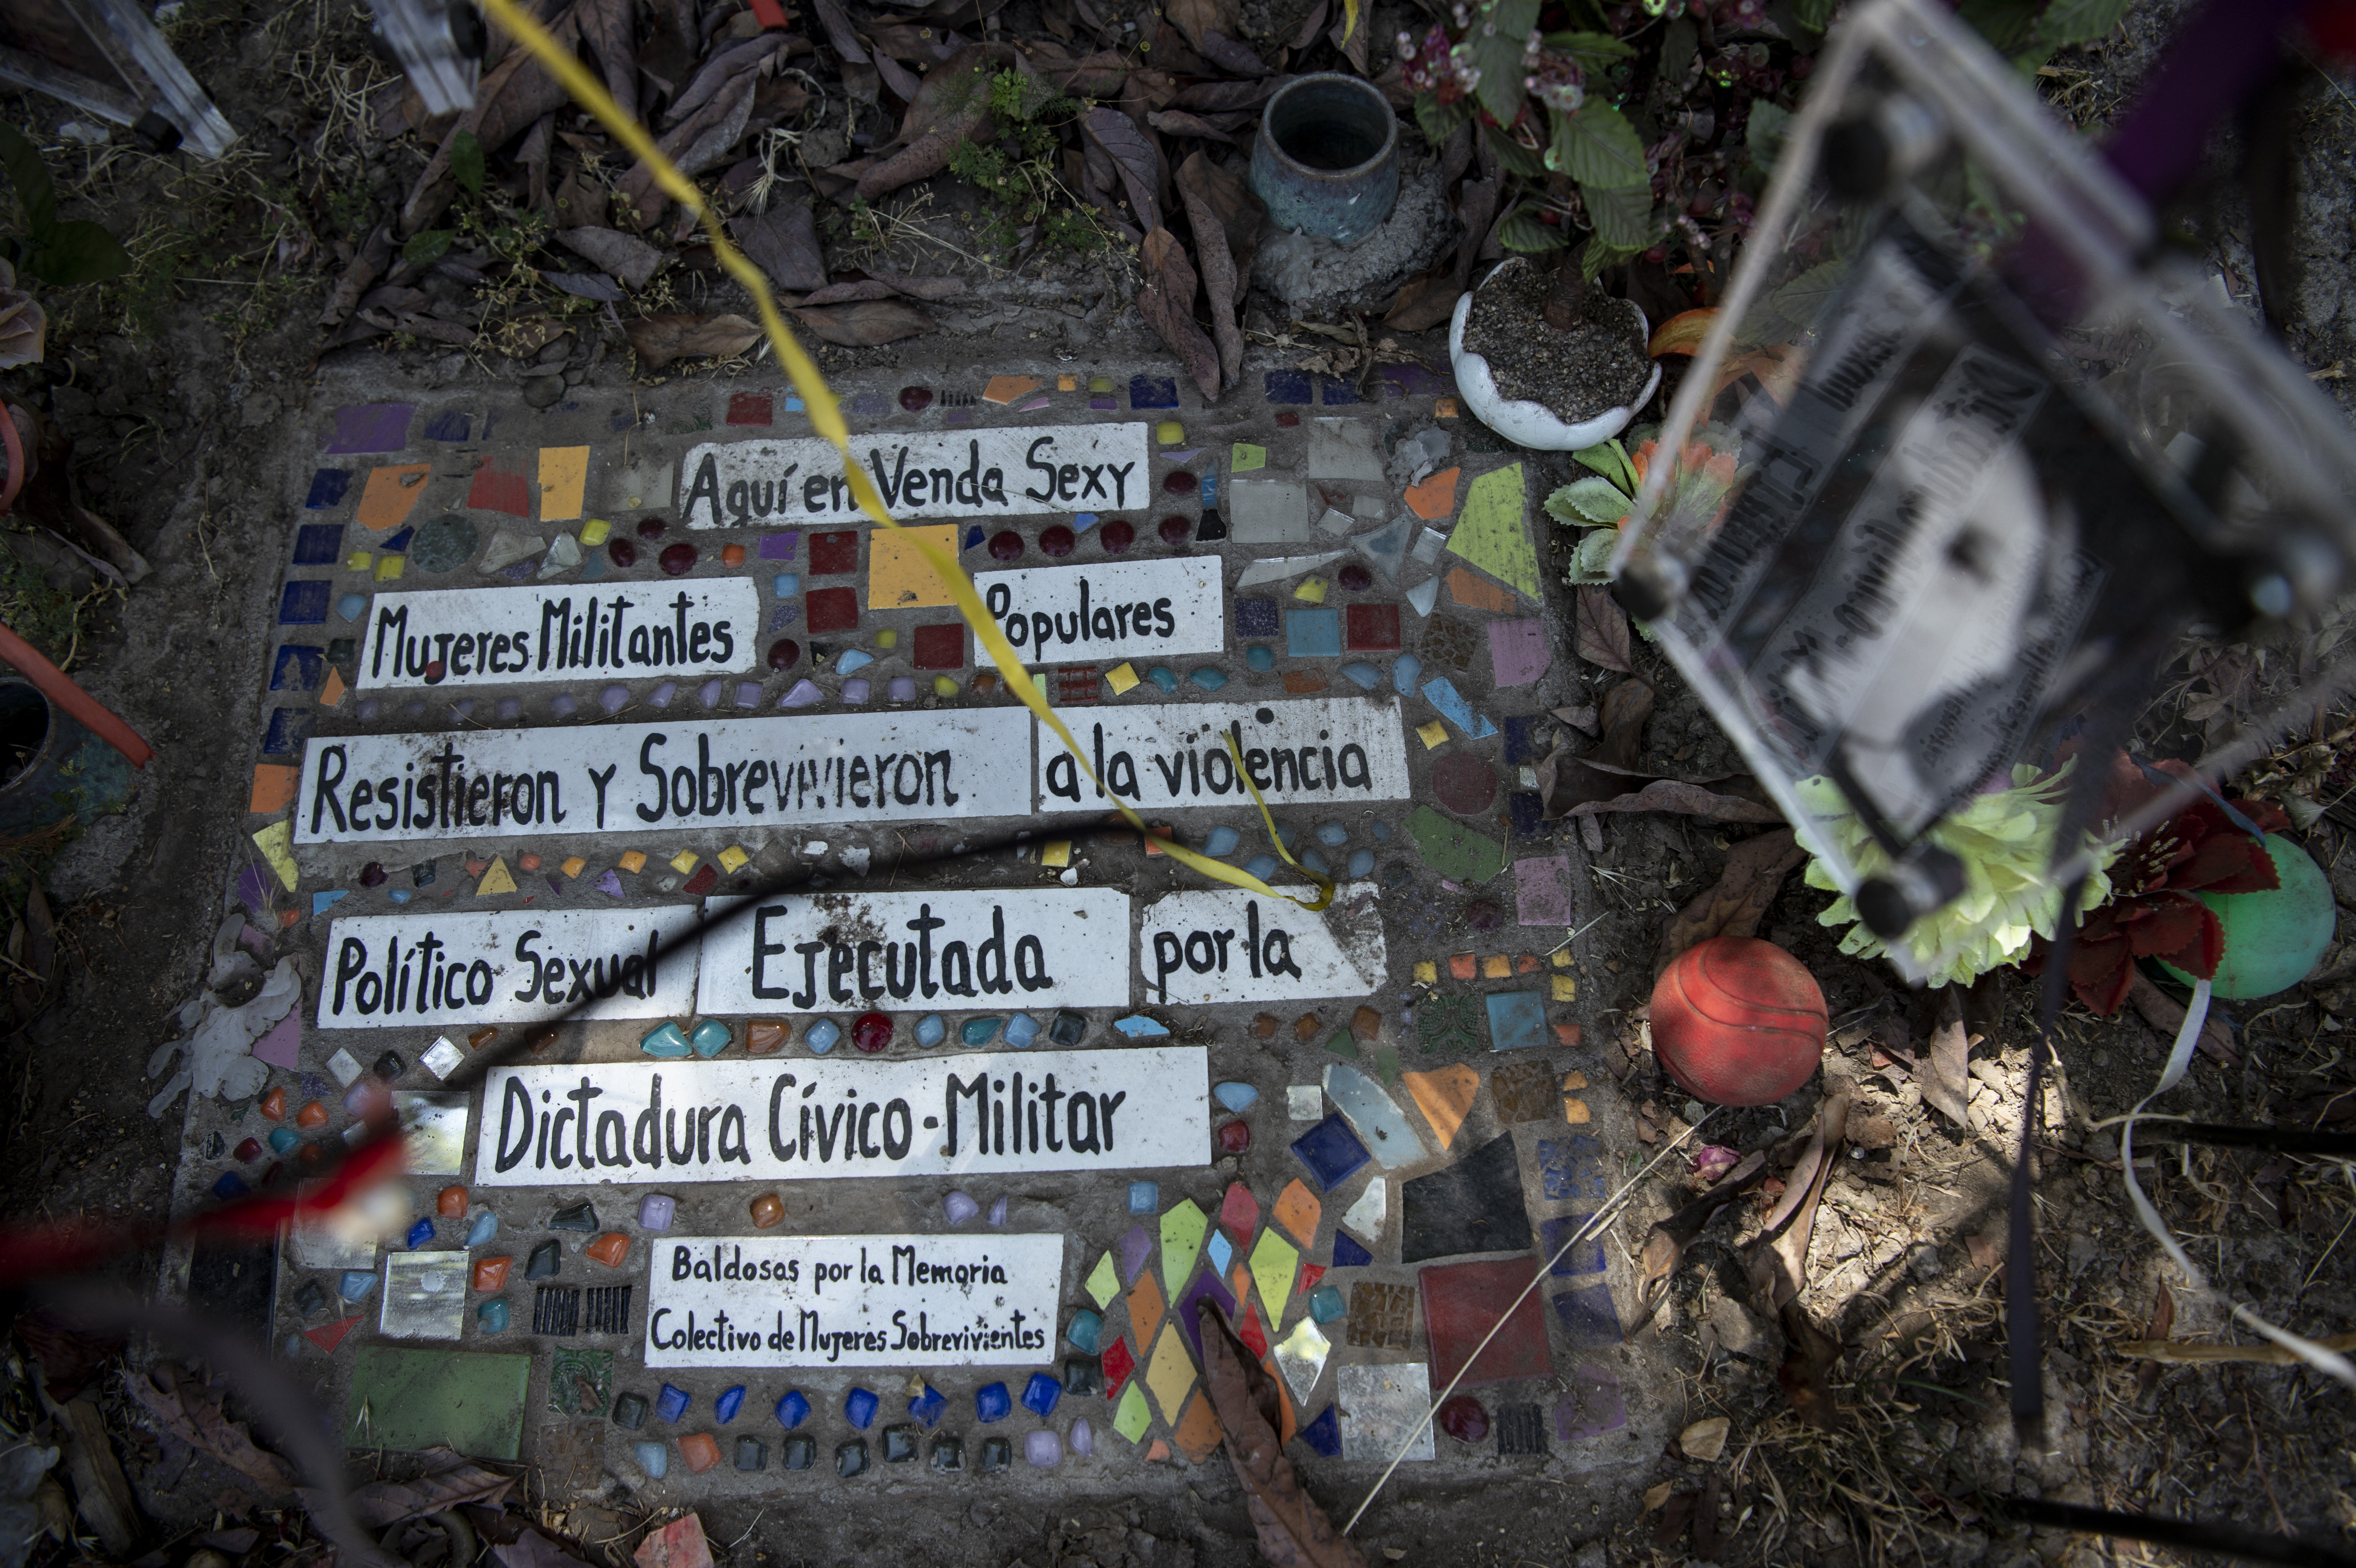 Castigadas con más saña, la violencia sexual contra la mujer en la dictadura de Pinochet